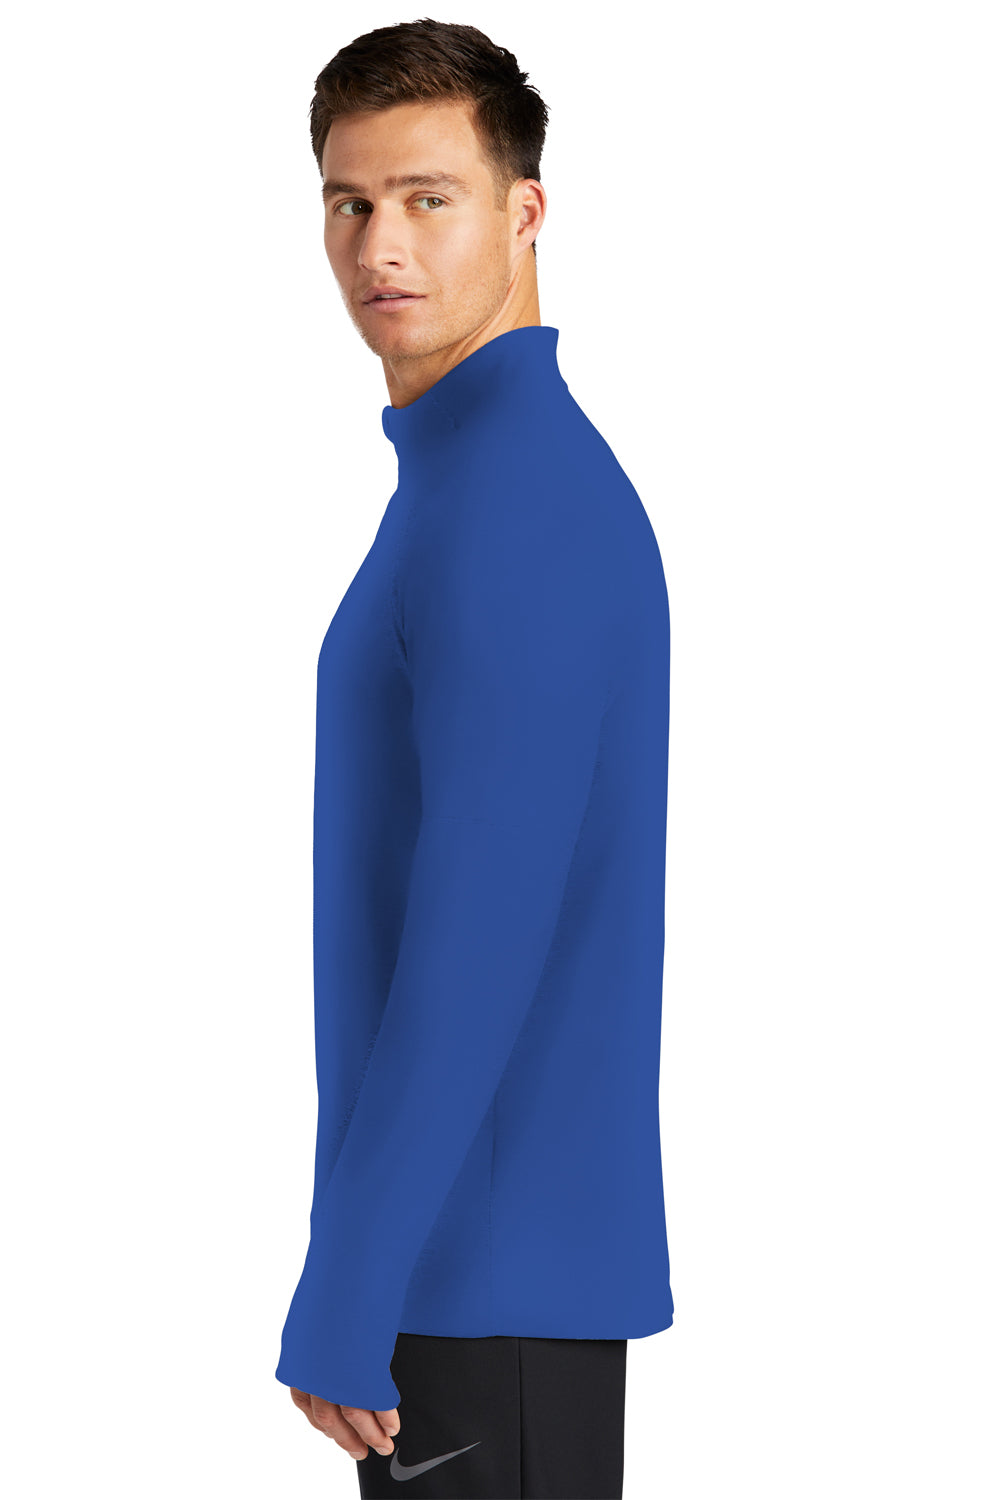 Nike NKDH4949 Mens Element Dri-Fit Moisture Wicking 1/4 Zip Sweatshirt Royal Blue Model Side